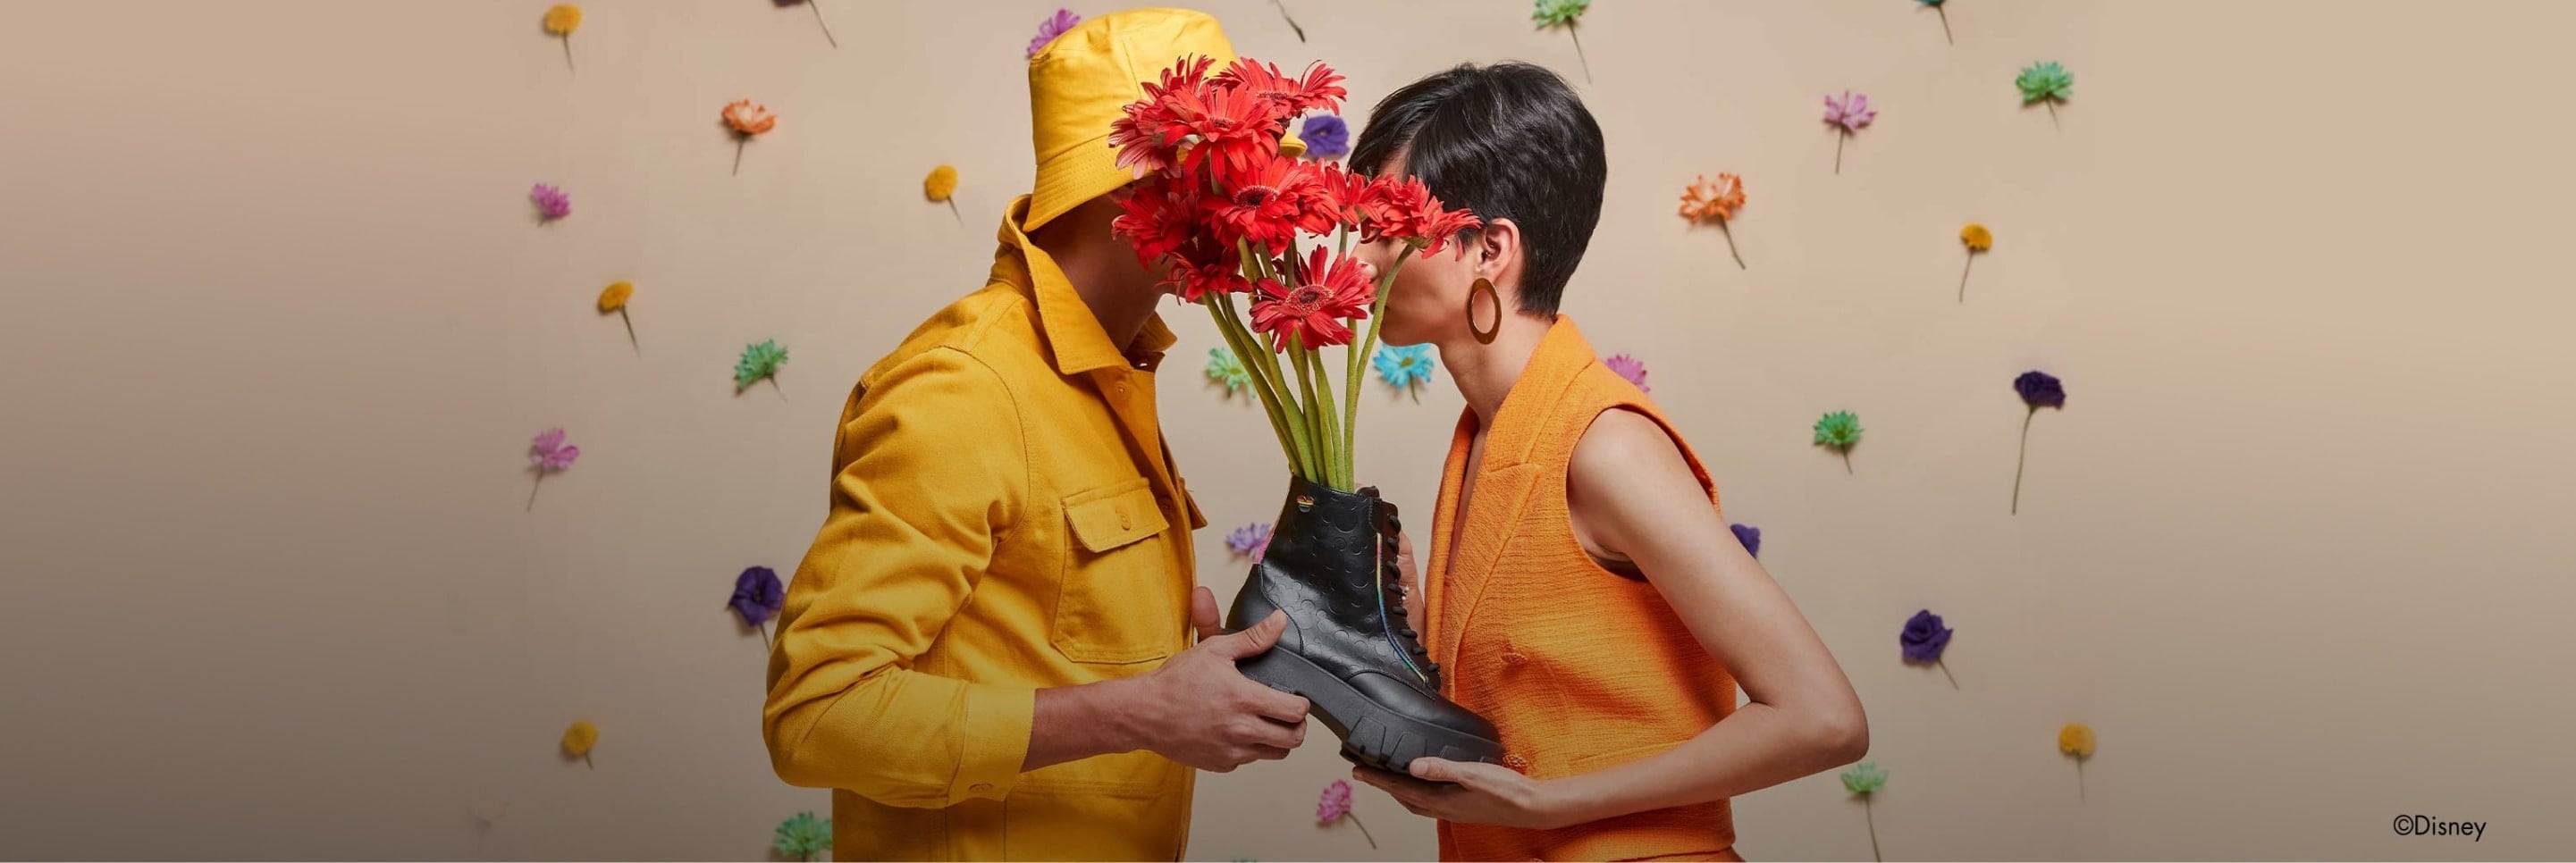 Imagen de un hombre y una mujer viendose cara a cara y sosteniendo una bota negra con unas margaritas en su interior, el lleva un impermeable amarillo, ella una blusa color naranja, W CAPSULE